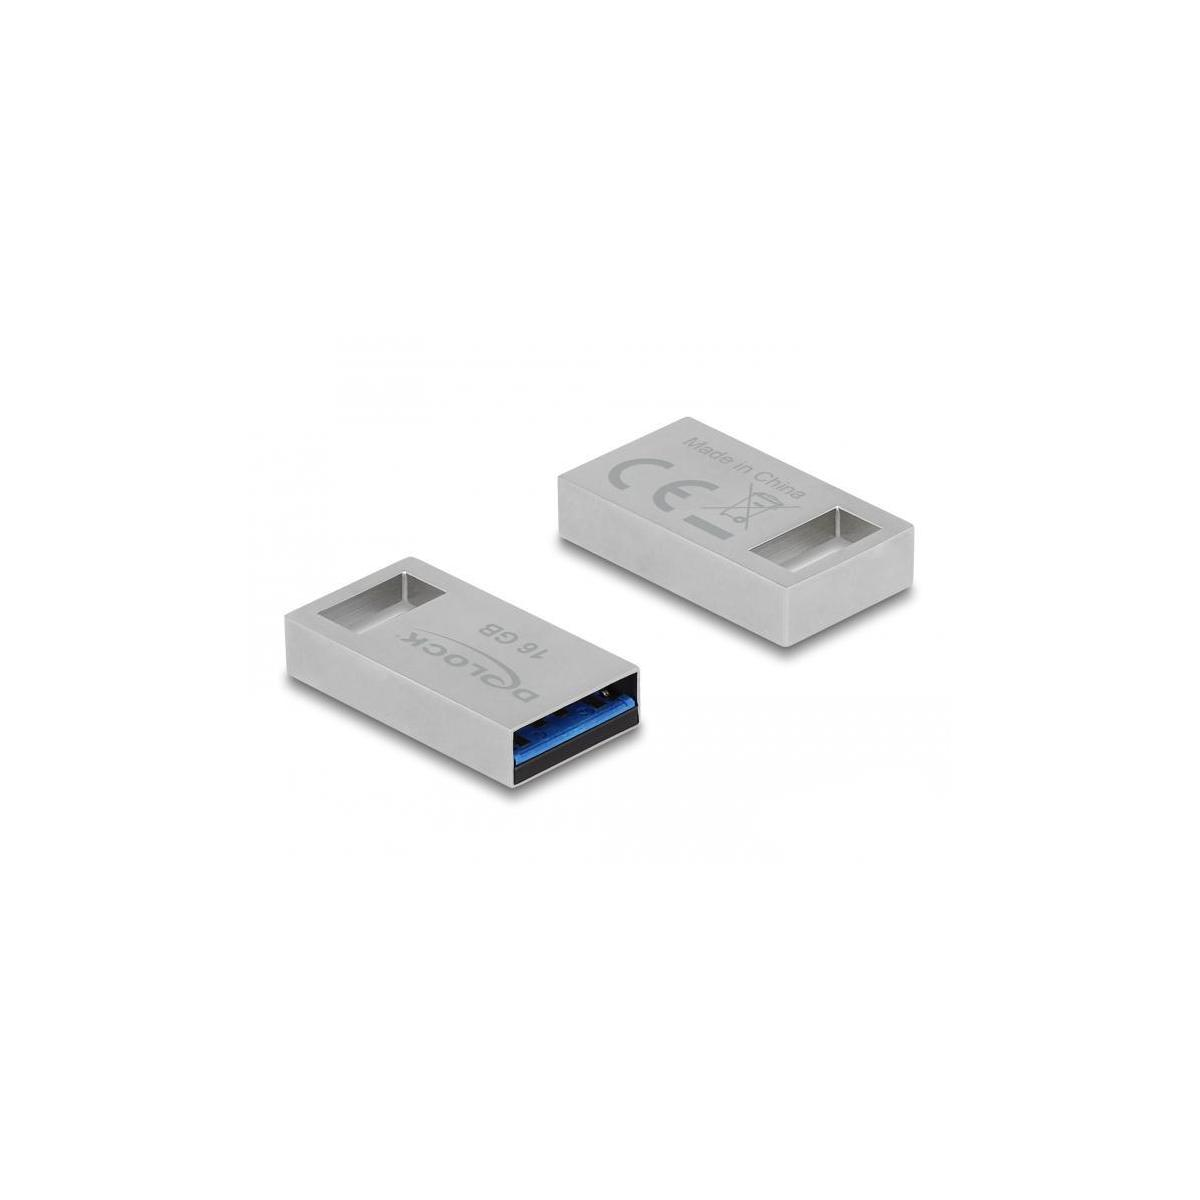 DELOCK 54069 USB Stick (Silber, 16 GB)